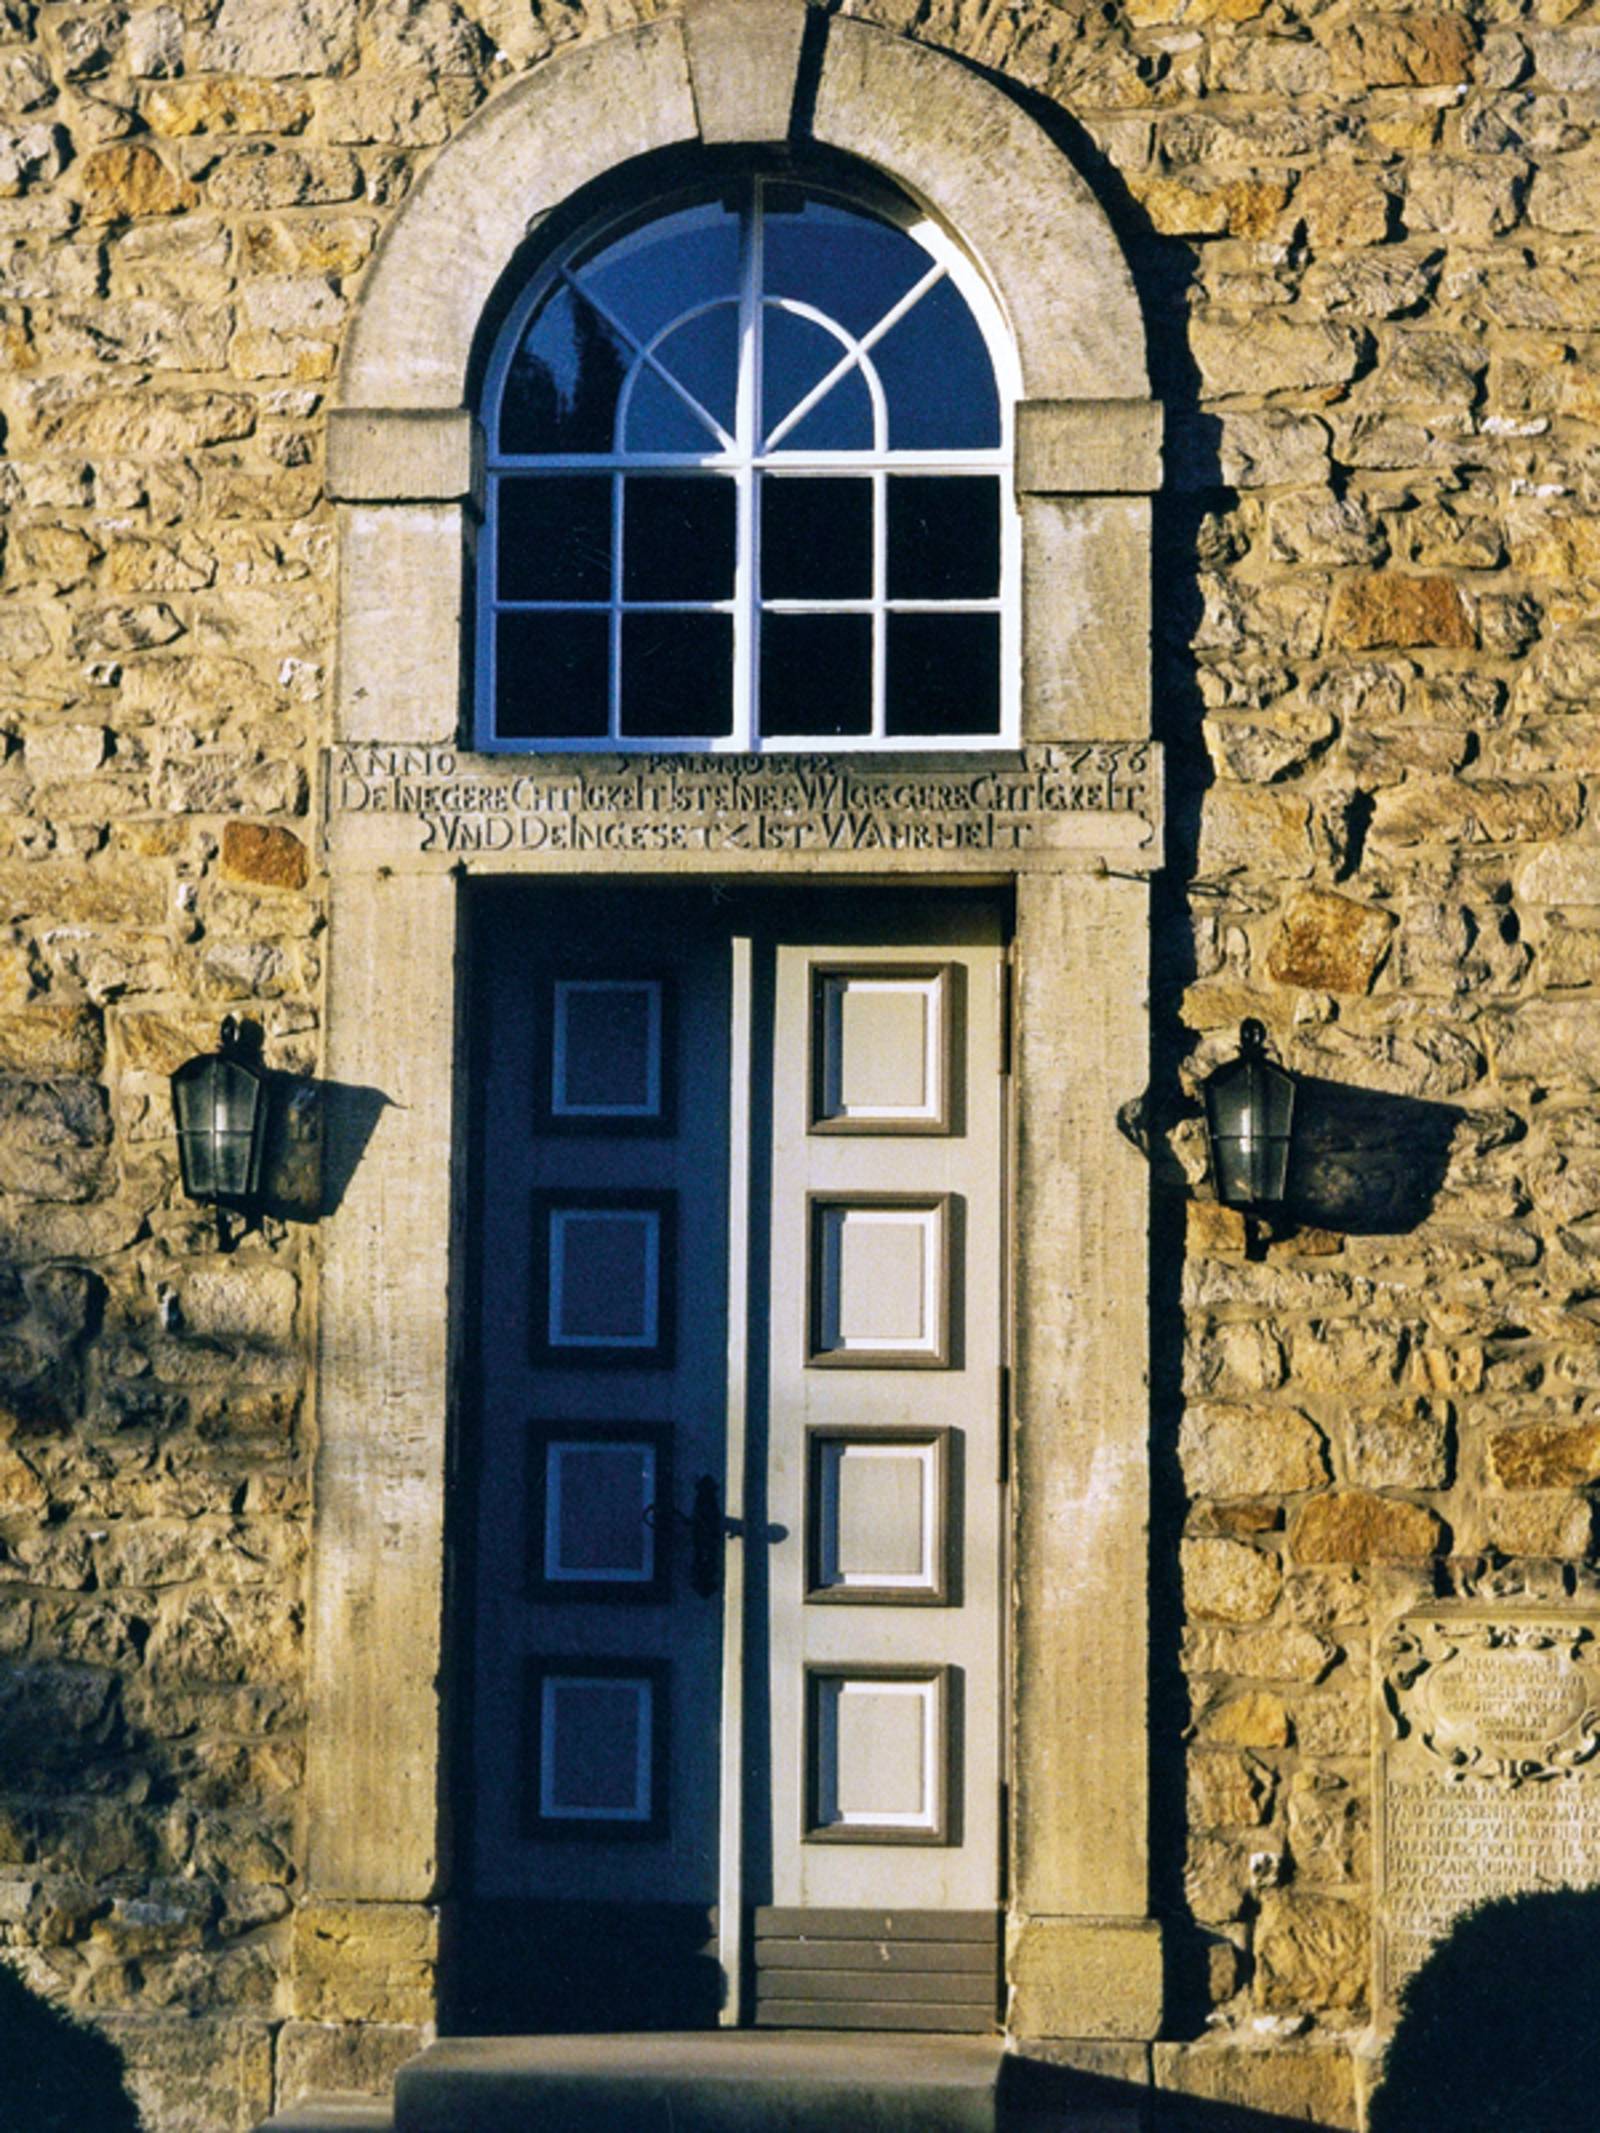 Hohe alte Tür mit einem Rundbogenfenster über dem Türzsturz in einem aus Bruchsteinen gemauerten Gebäude